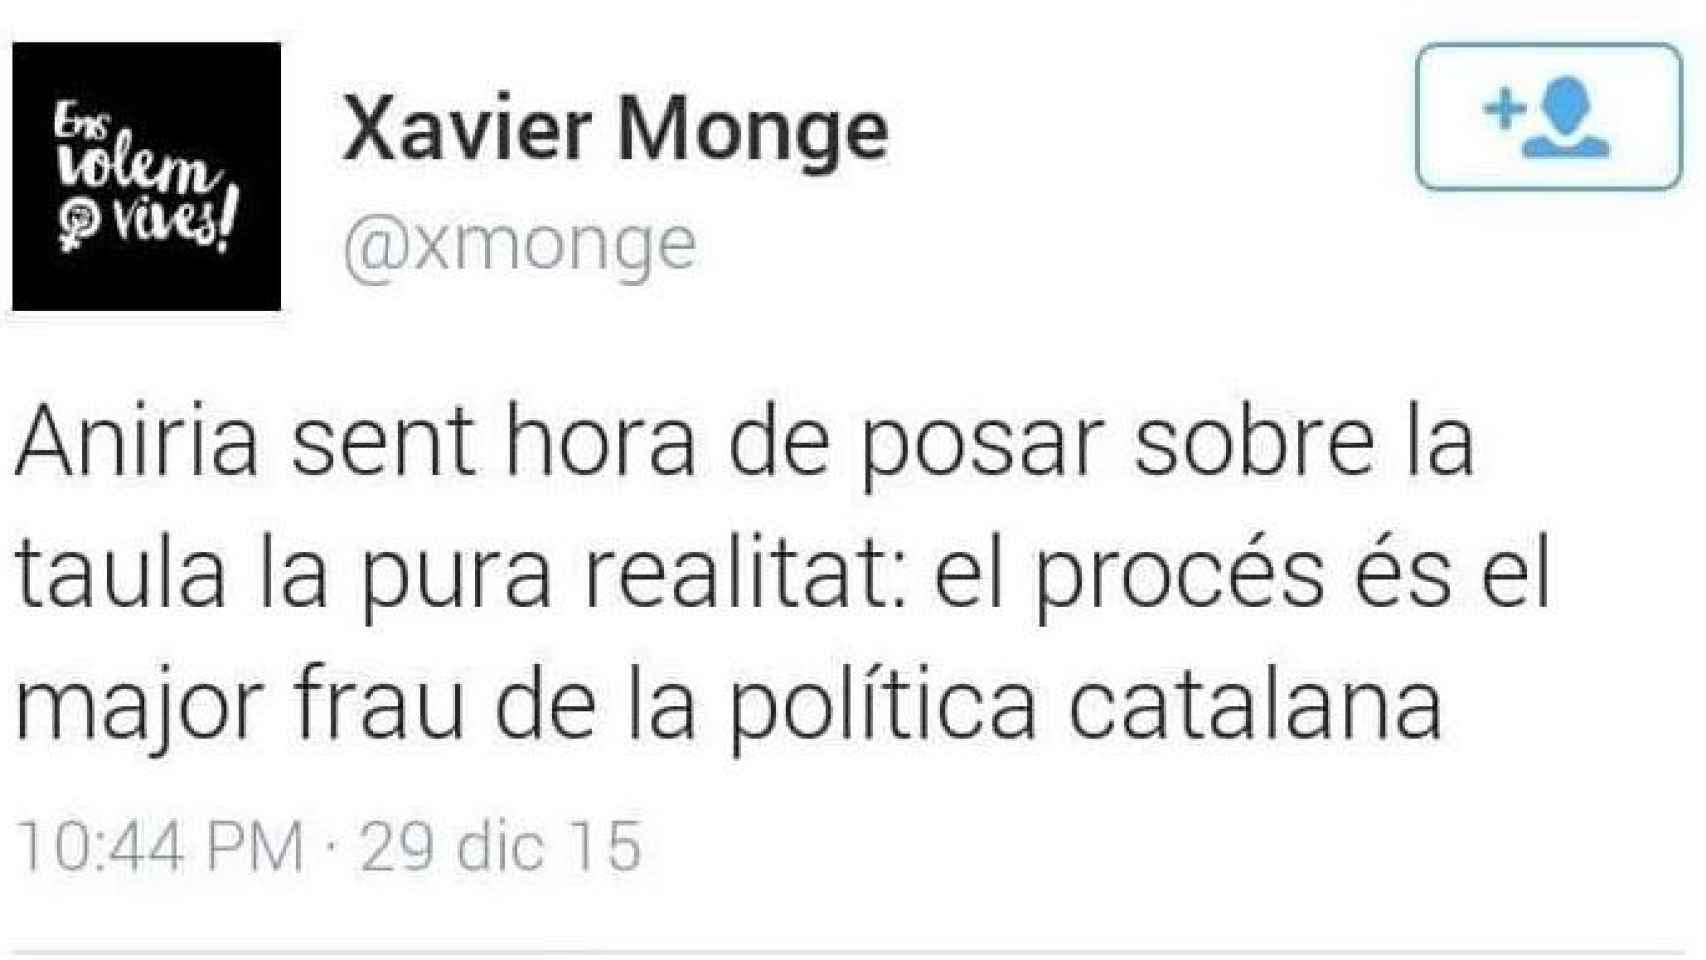 'El proceso es el mayor fraude de la política catalana', escribió Monge.